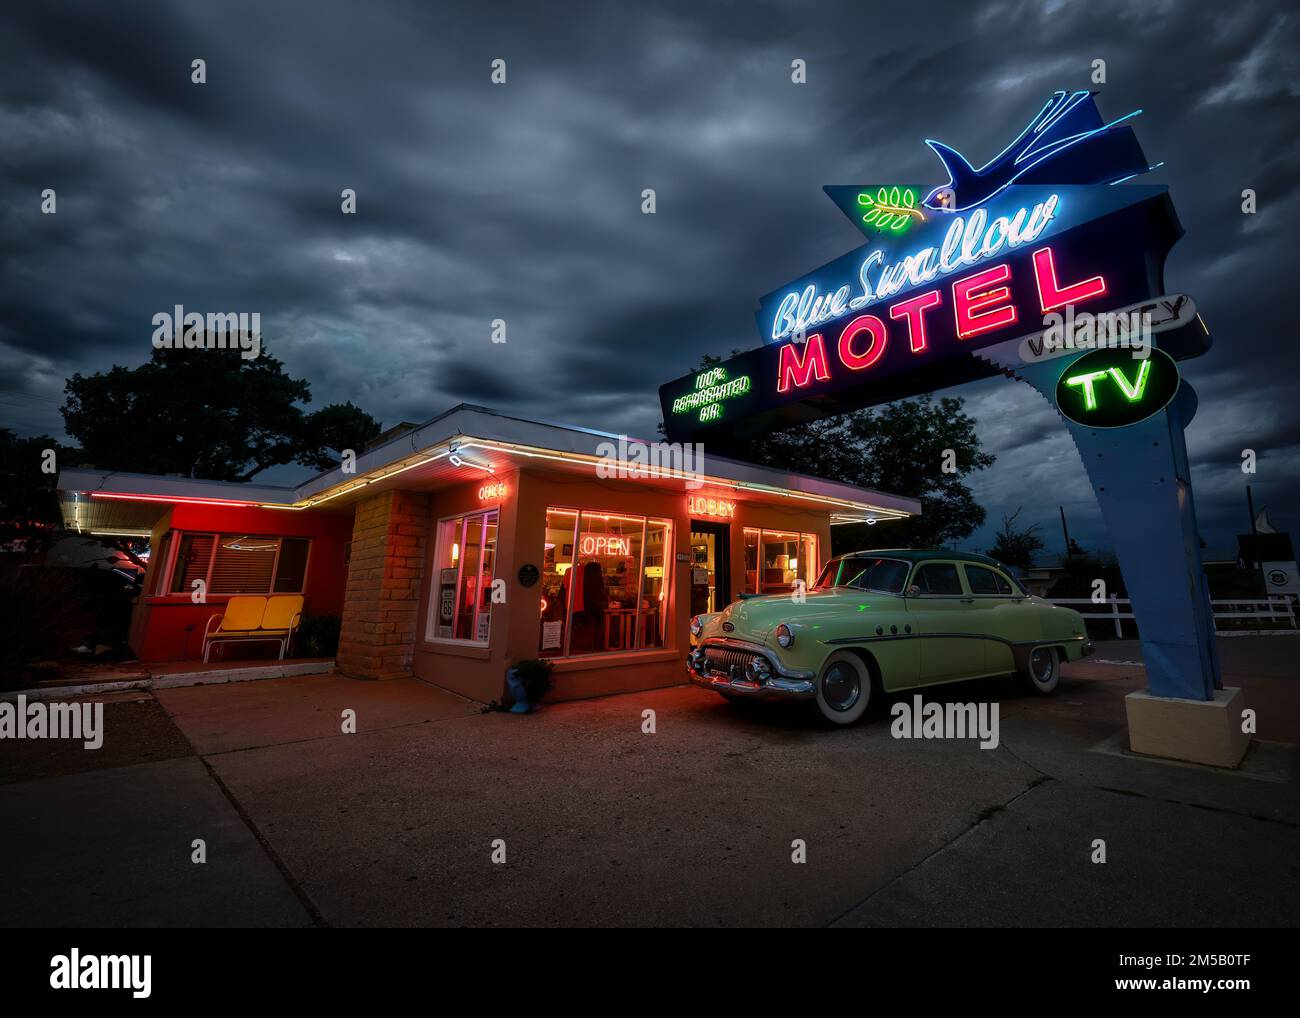 Das Blue Swallow Motel wurde 1939 erbaut und befindet sich noch immer auf der historischen Route 66 in Tucumcari, New Mexico. Stockfoto